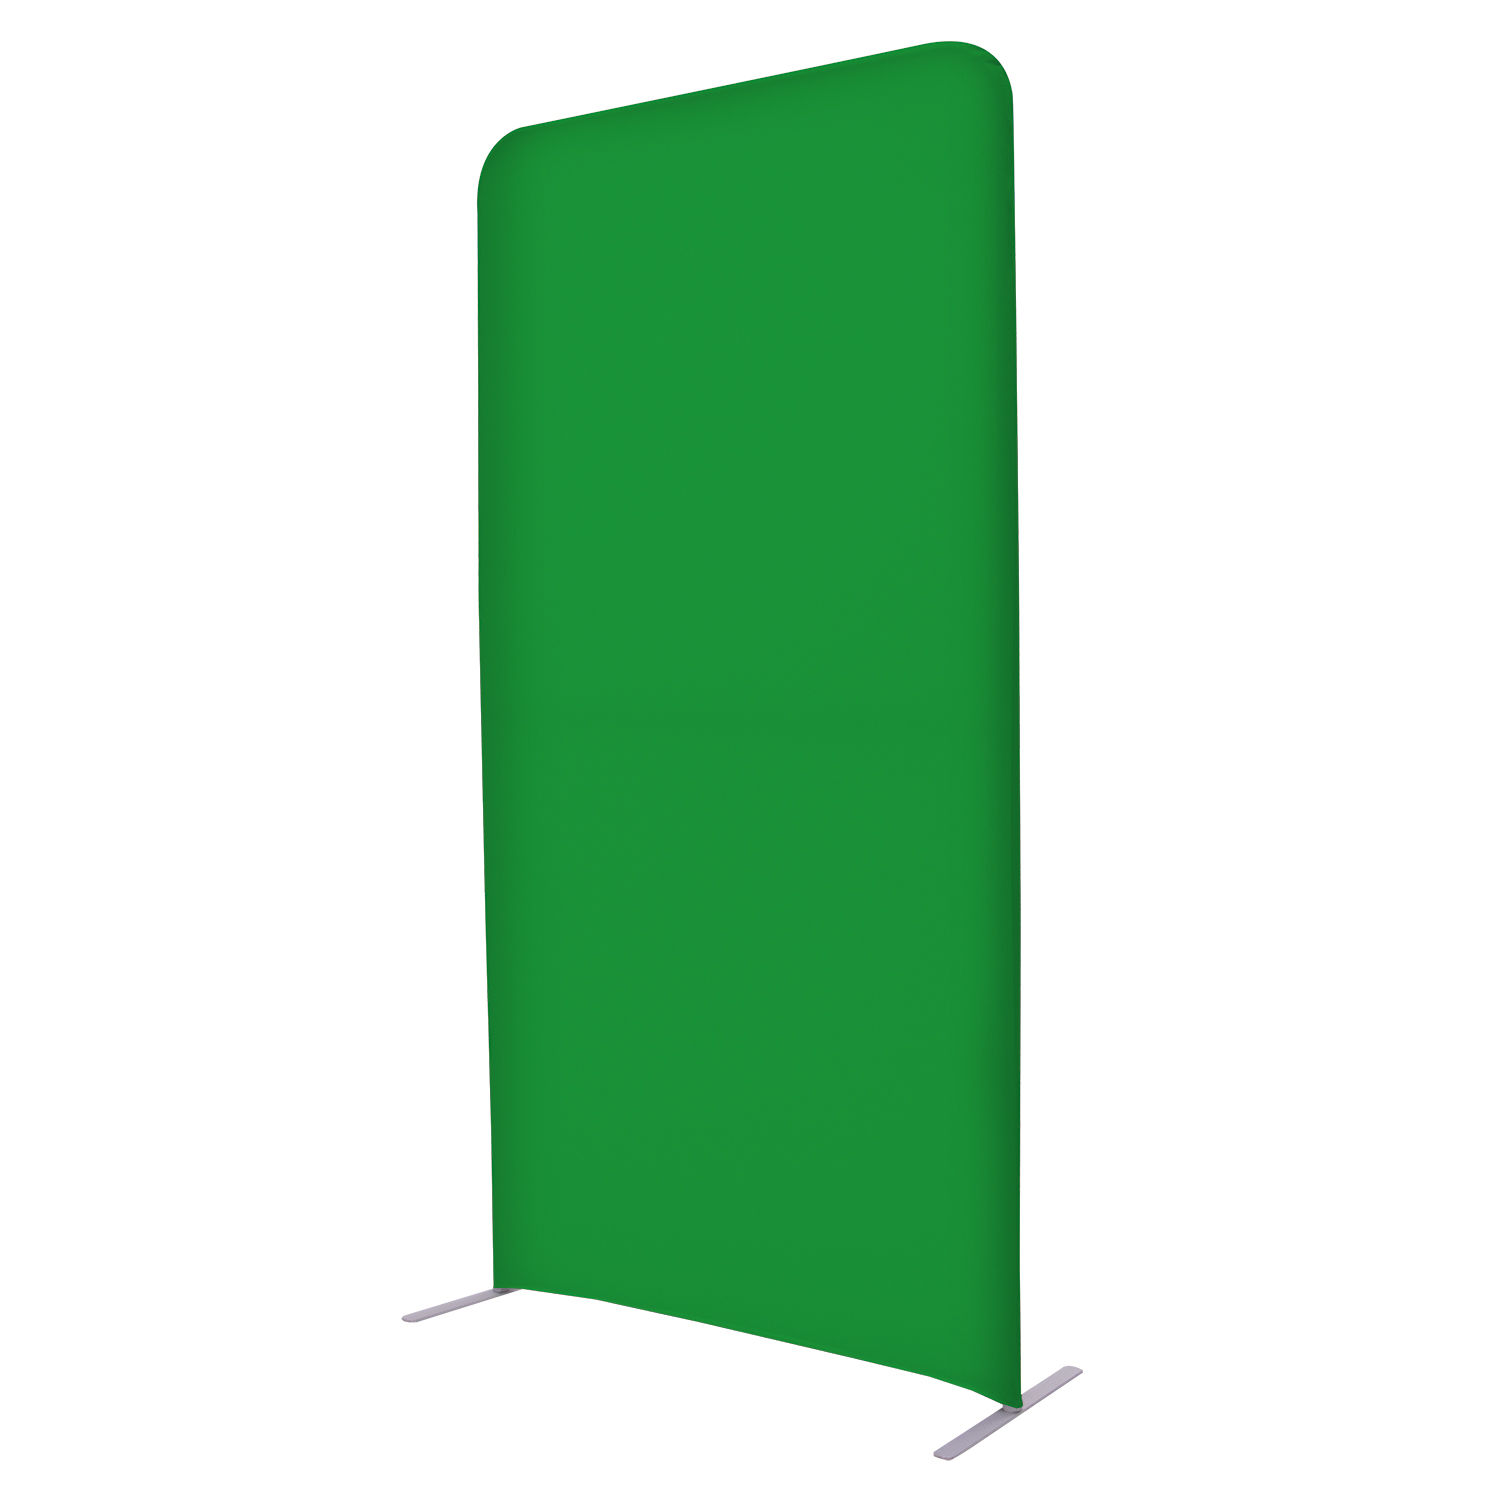 4'W x 90"H EuroFit Straight wall Green Screen Kit